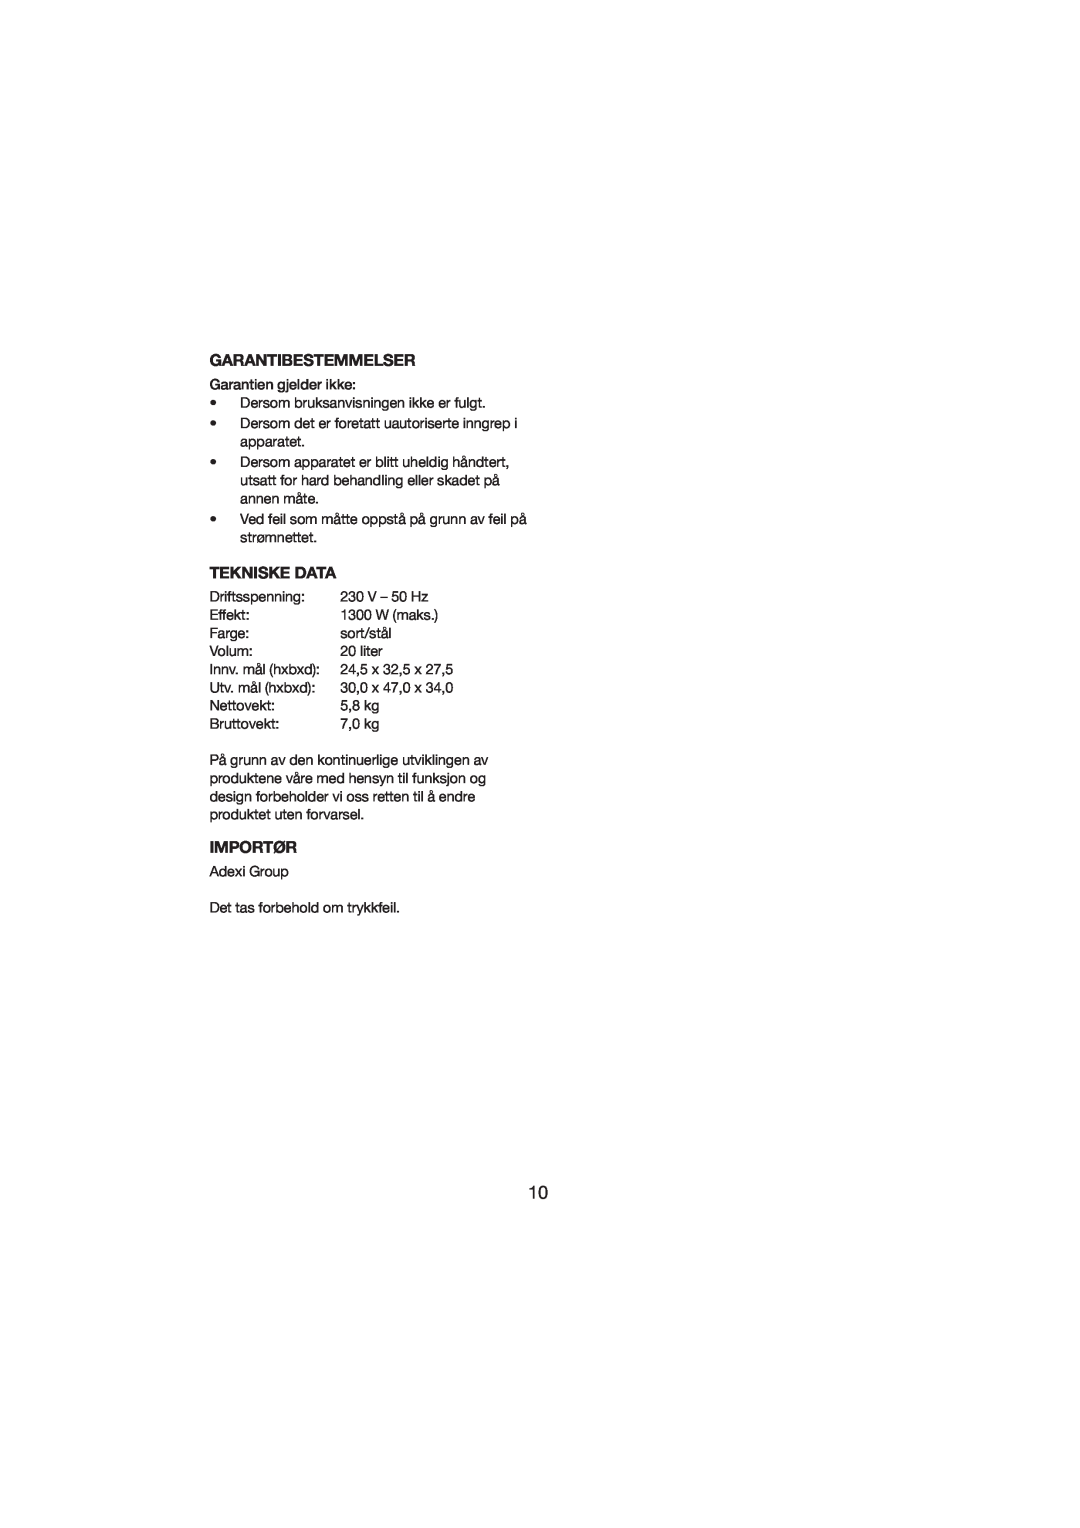 Melissa 251-003/004 manual Garantibestemmelser, Tekniske Data, Importør 